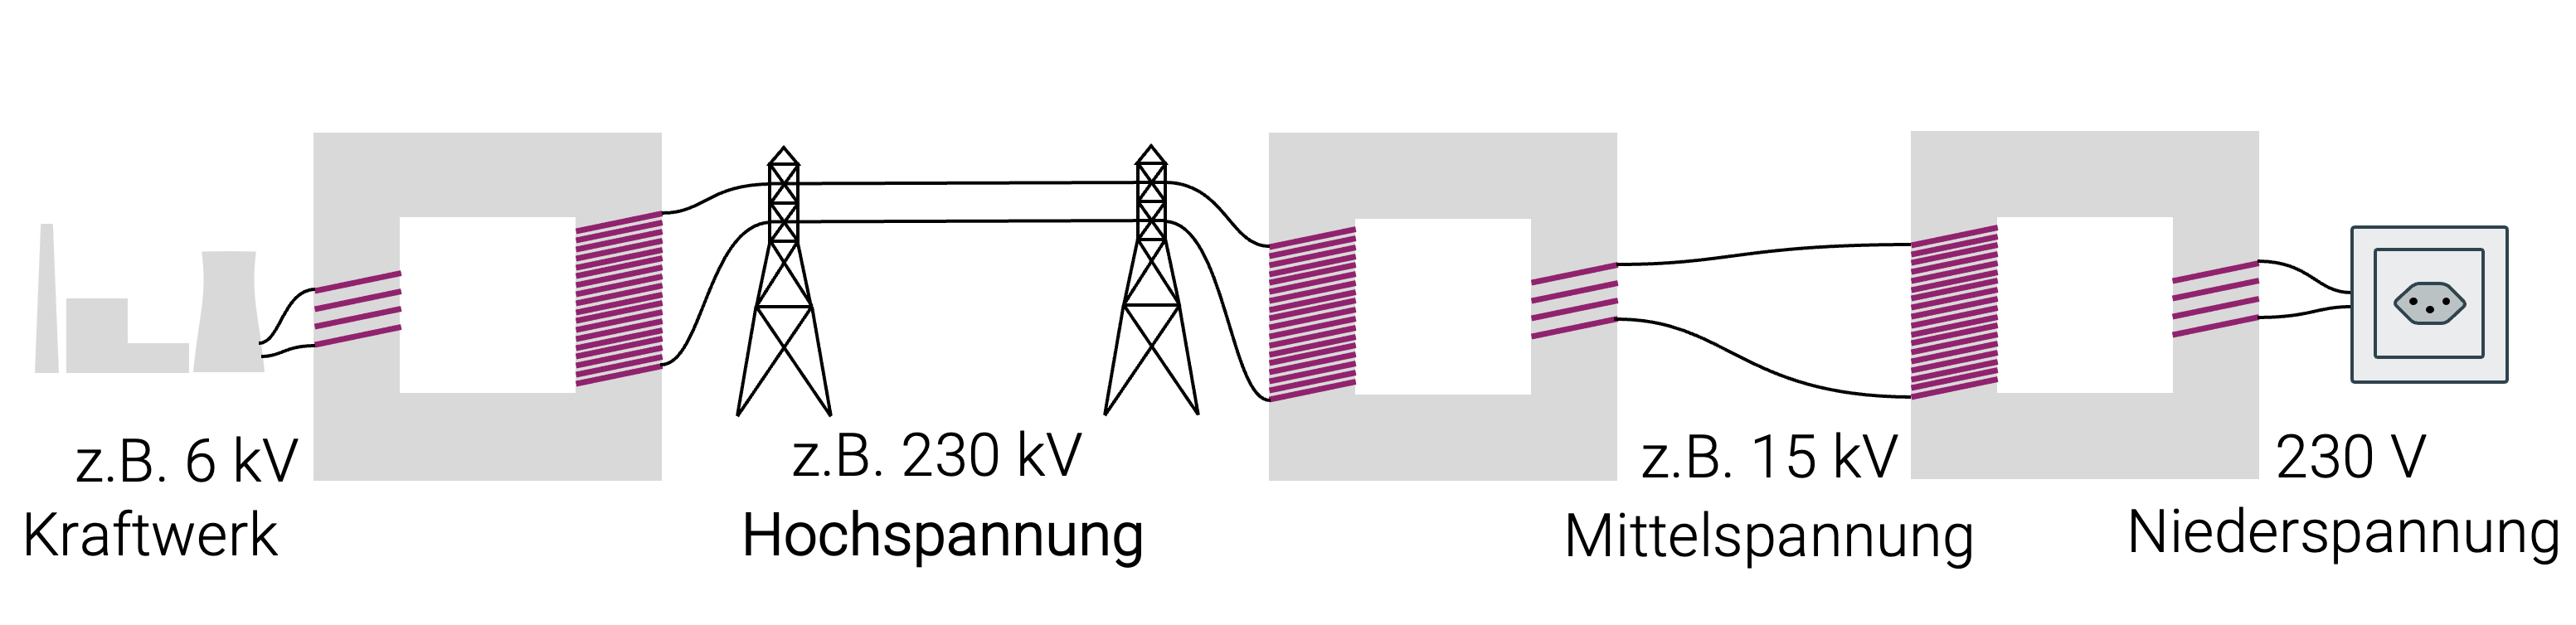 Stromübertragung mit Transformatoren zwischen Kraftwerk und Steckdose